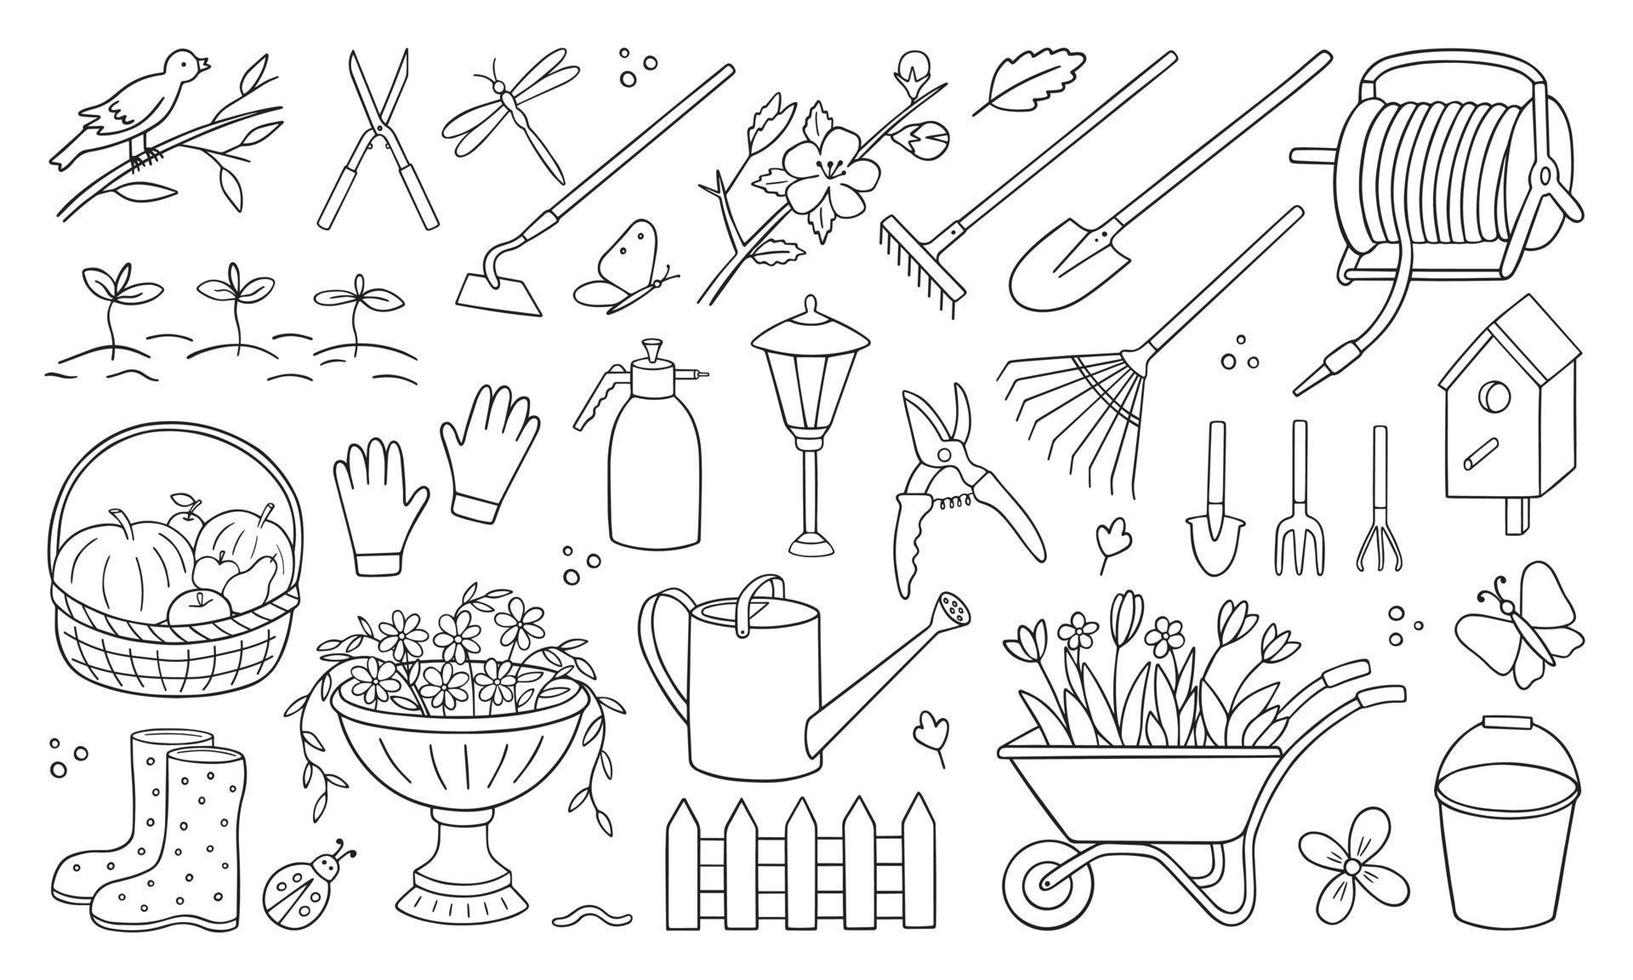 insieme disegnato a mano di doodle di giardinaggio. attrezzi da giardino, agricoltura, attrezzature in stile schizzo. illustrazione vettoriale isolato su sfondo bianco.